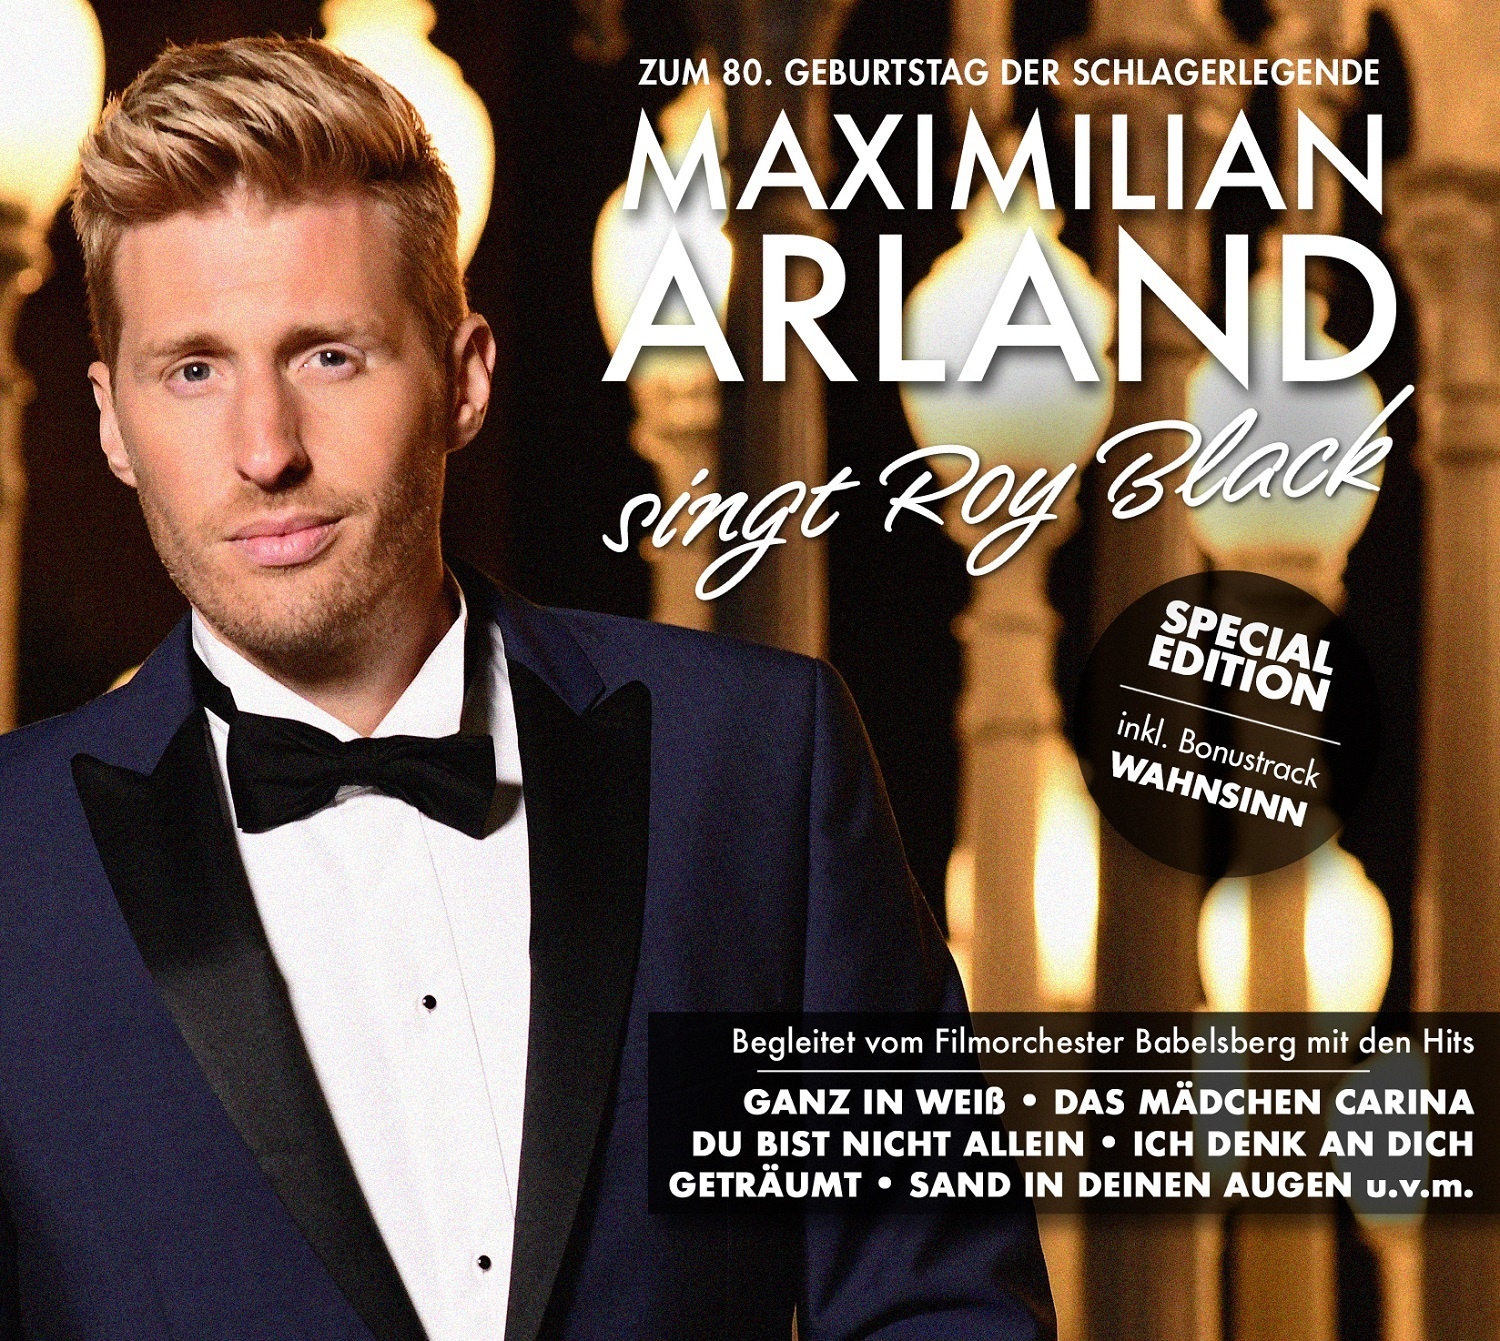 Maximilian Arland singt Roy Black - Maximilian Arland. (CD)